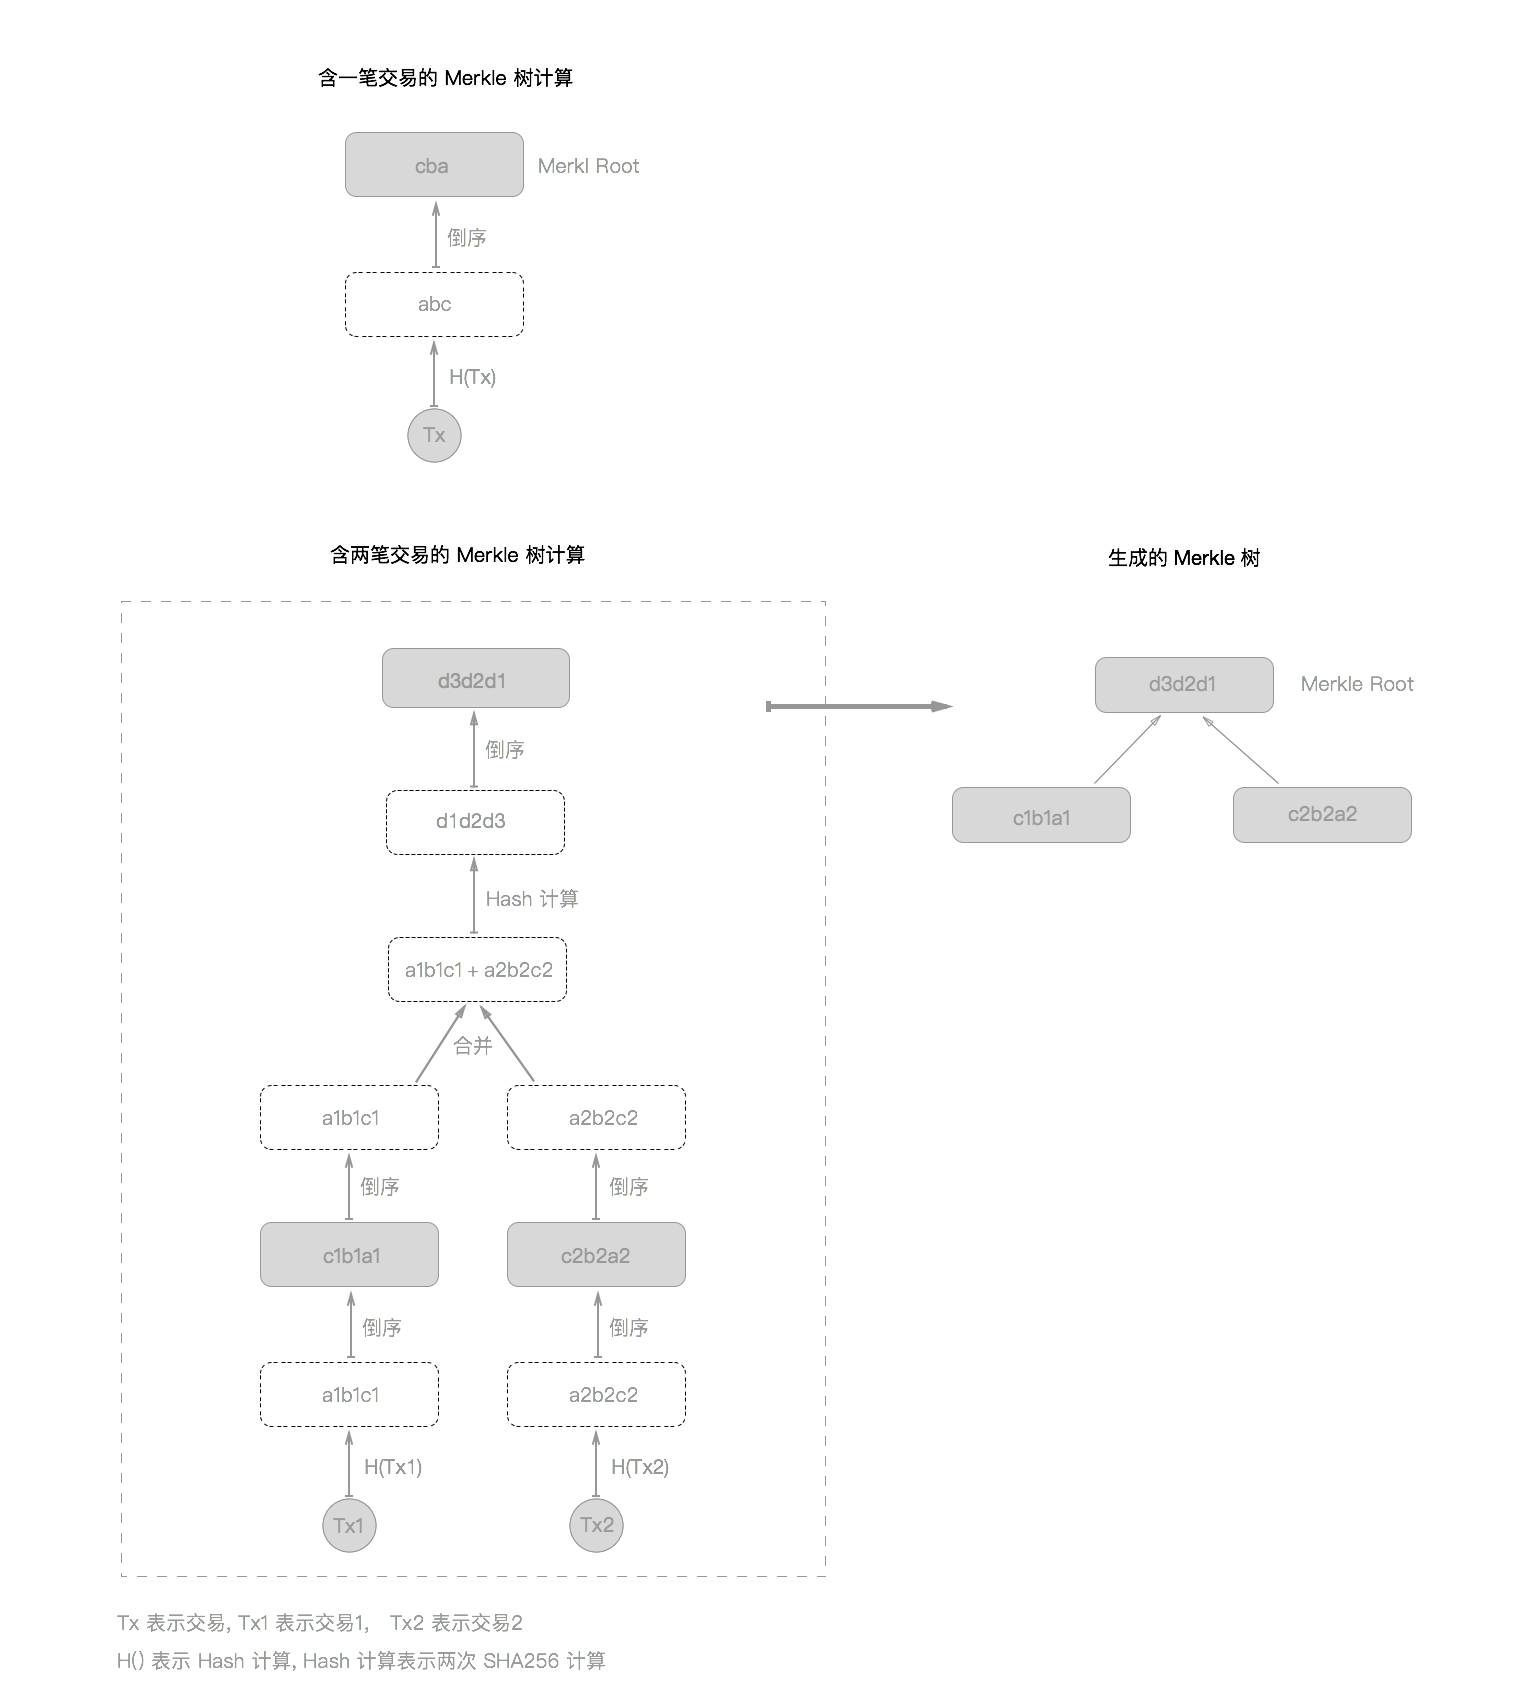 比特币 Merkle 树计算过程